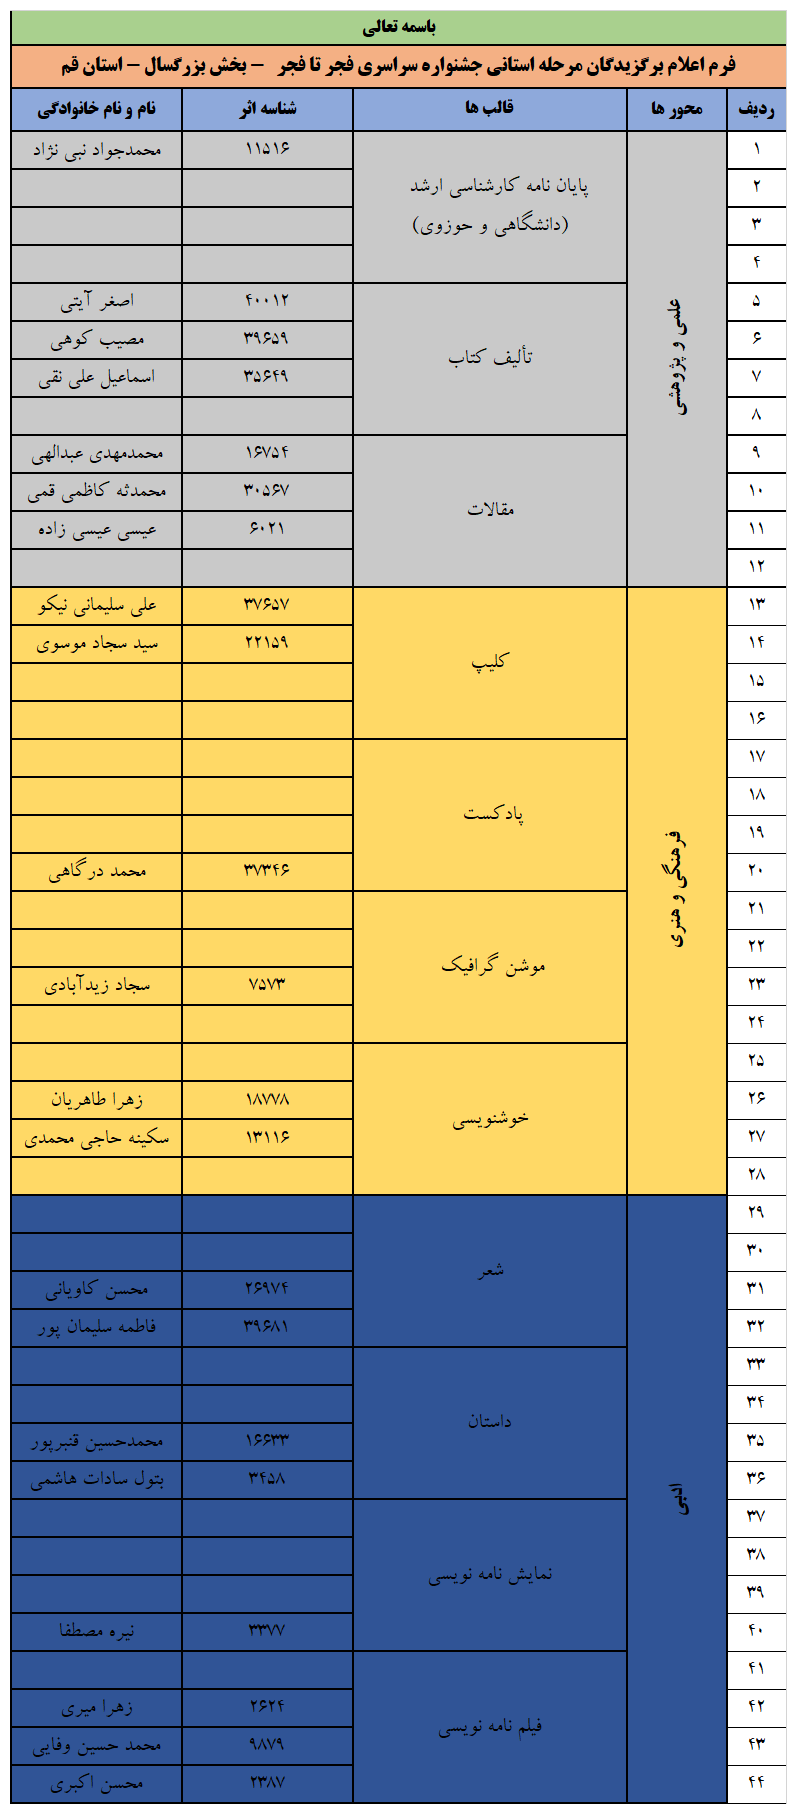 اسامی برگزیدگان جشنواره سراسری فجر تا فجر نماز در قم منتشر شد